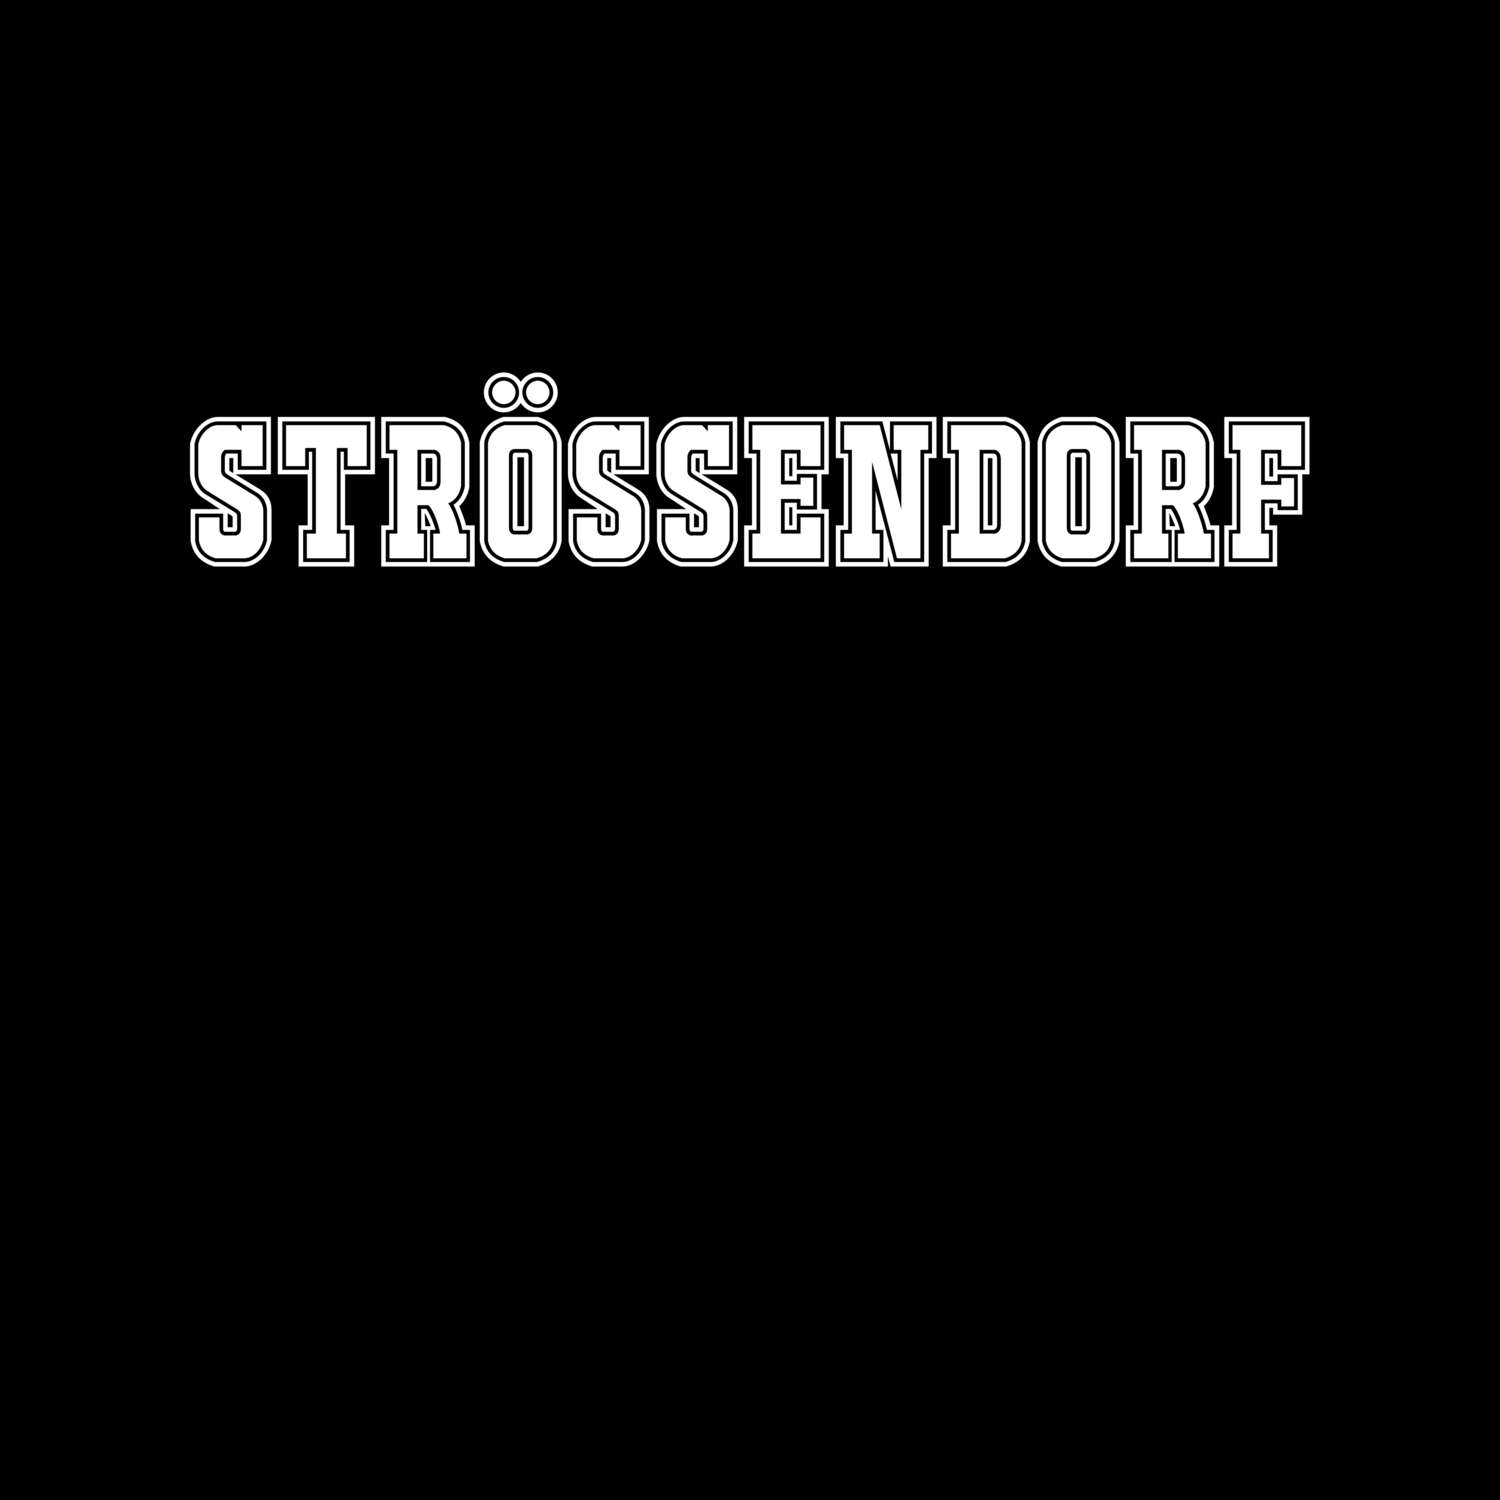 Strössendorf T-Shirt »Classic«